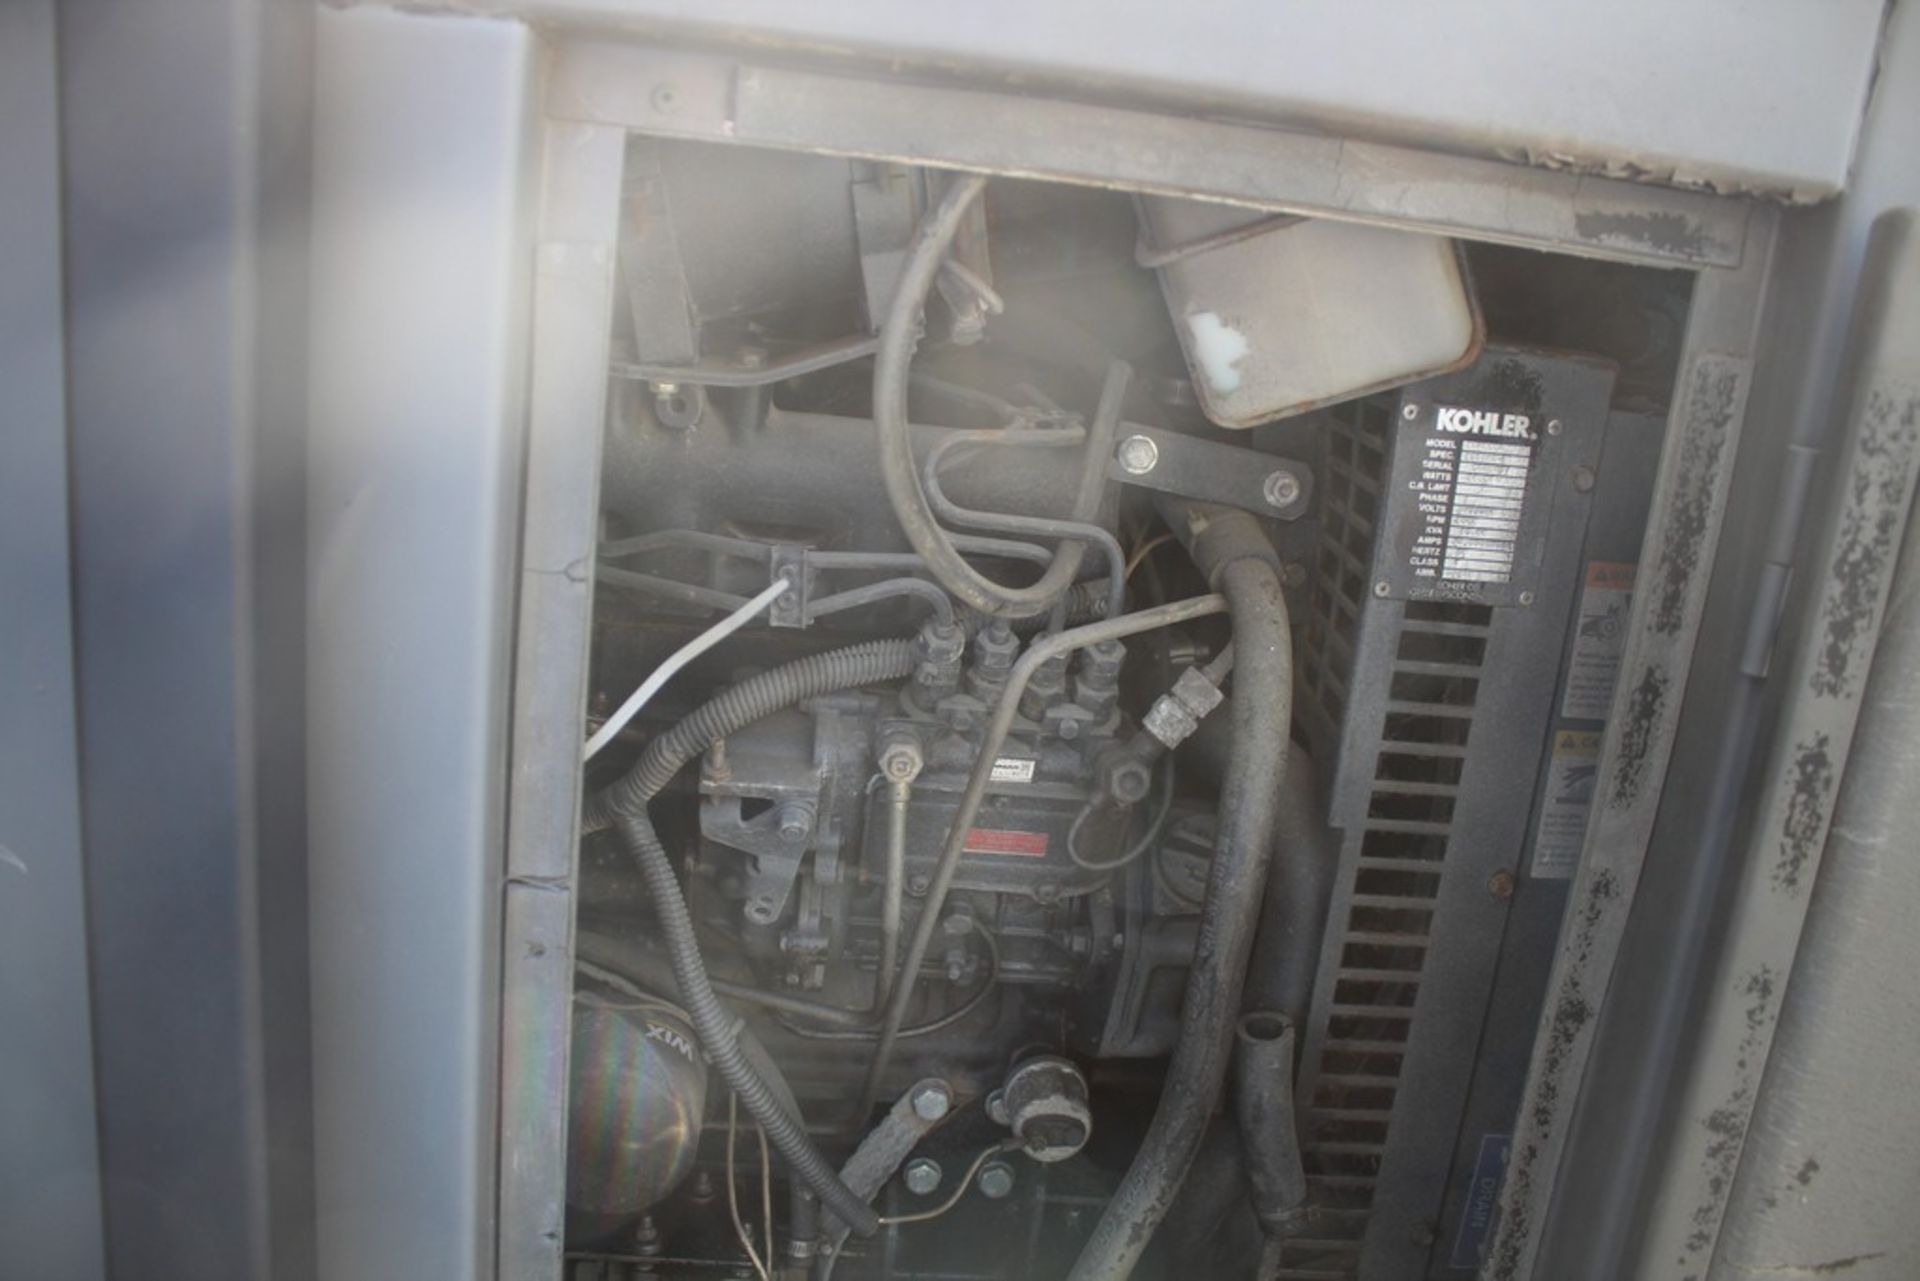 Kohler 58 KW Model 60REOZJBT Generator, s/n 135325-R, 6267 Hours on Meter, on Trailer - Image 4 of 6